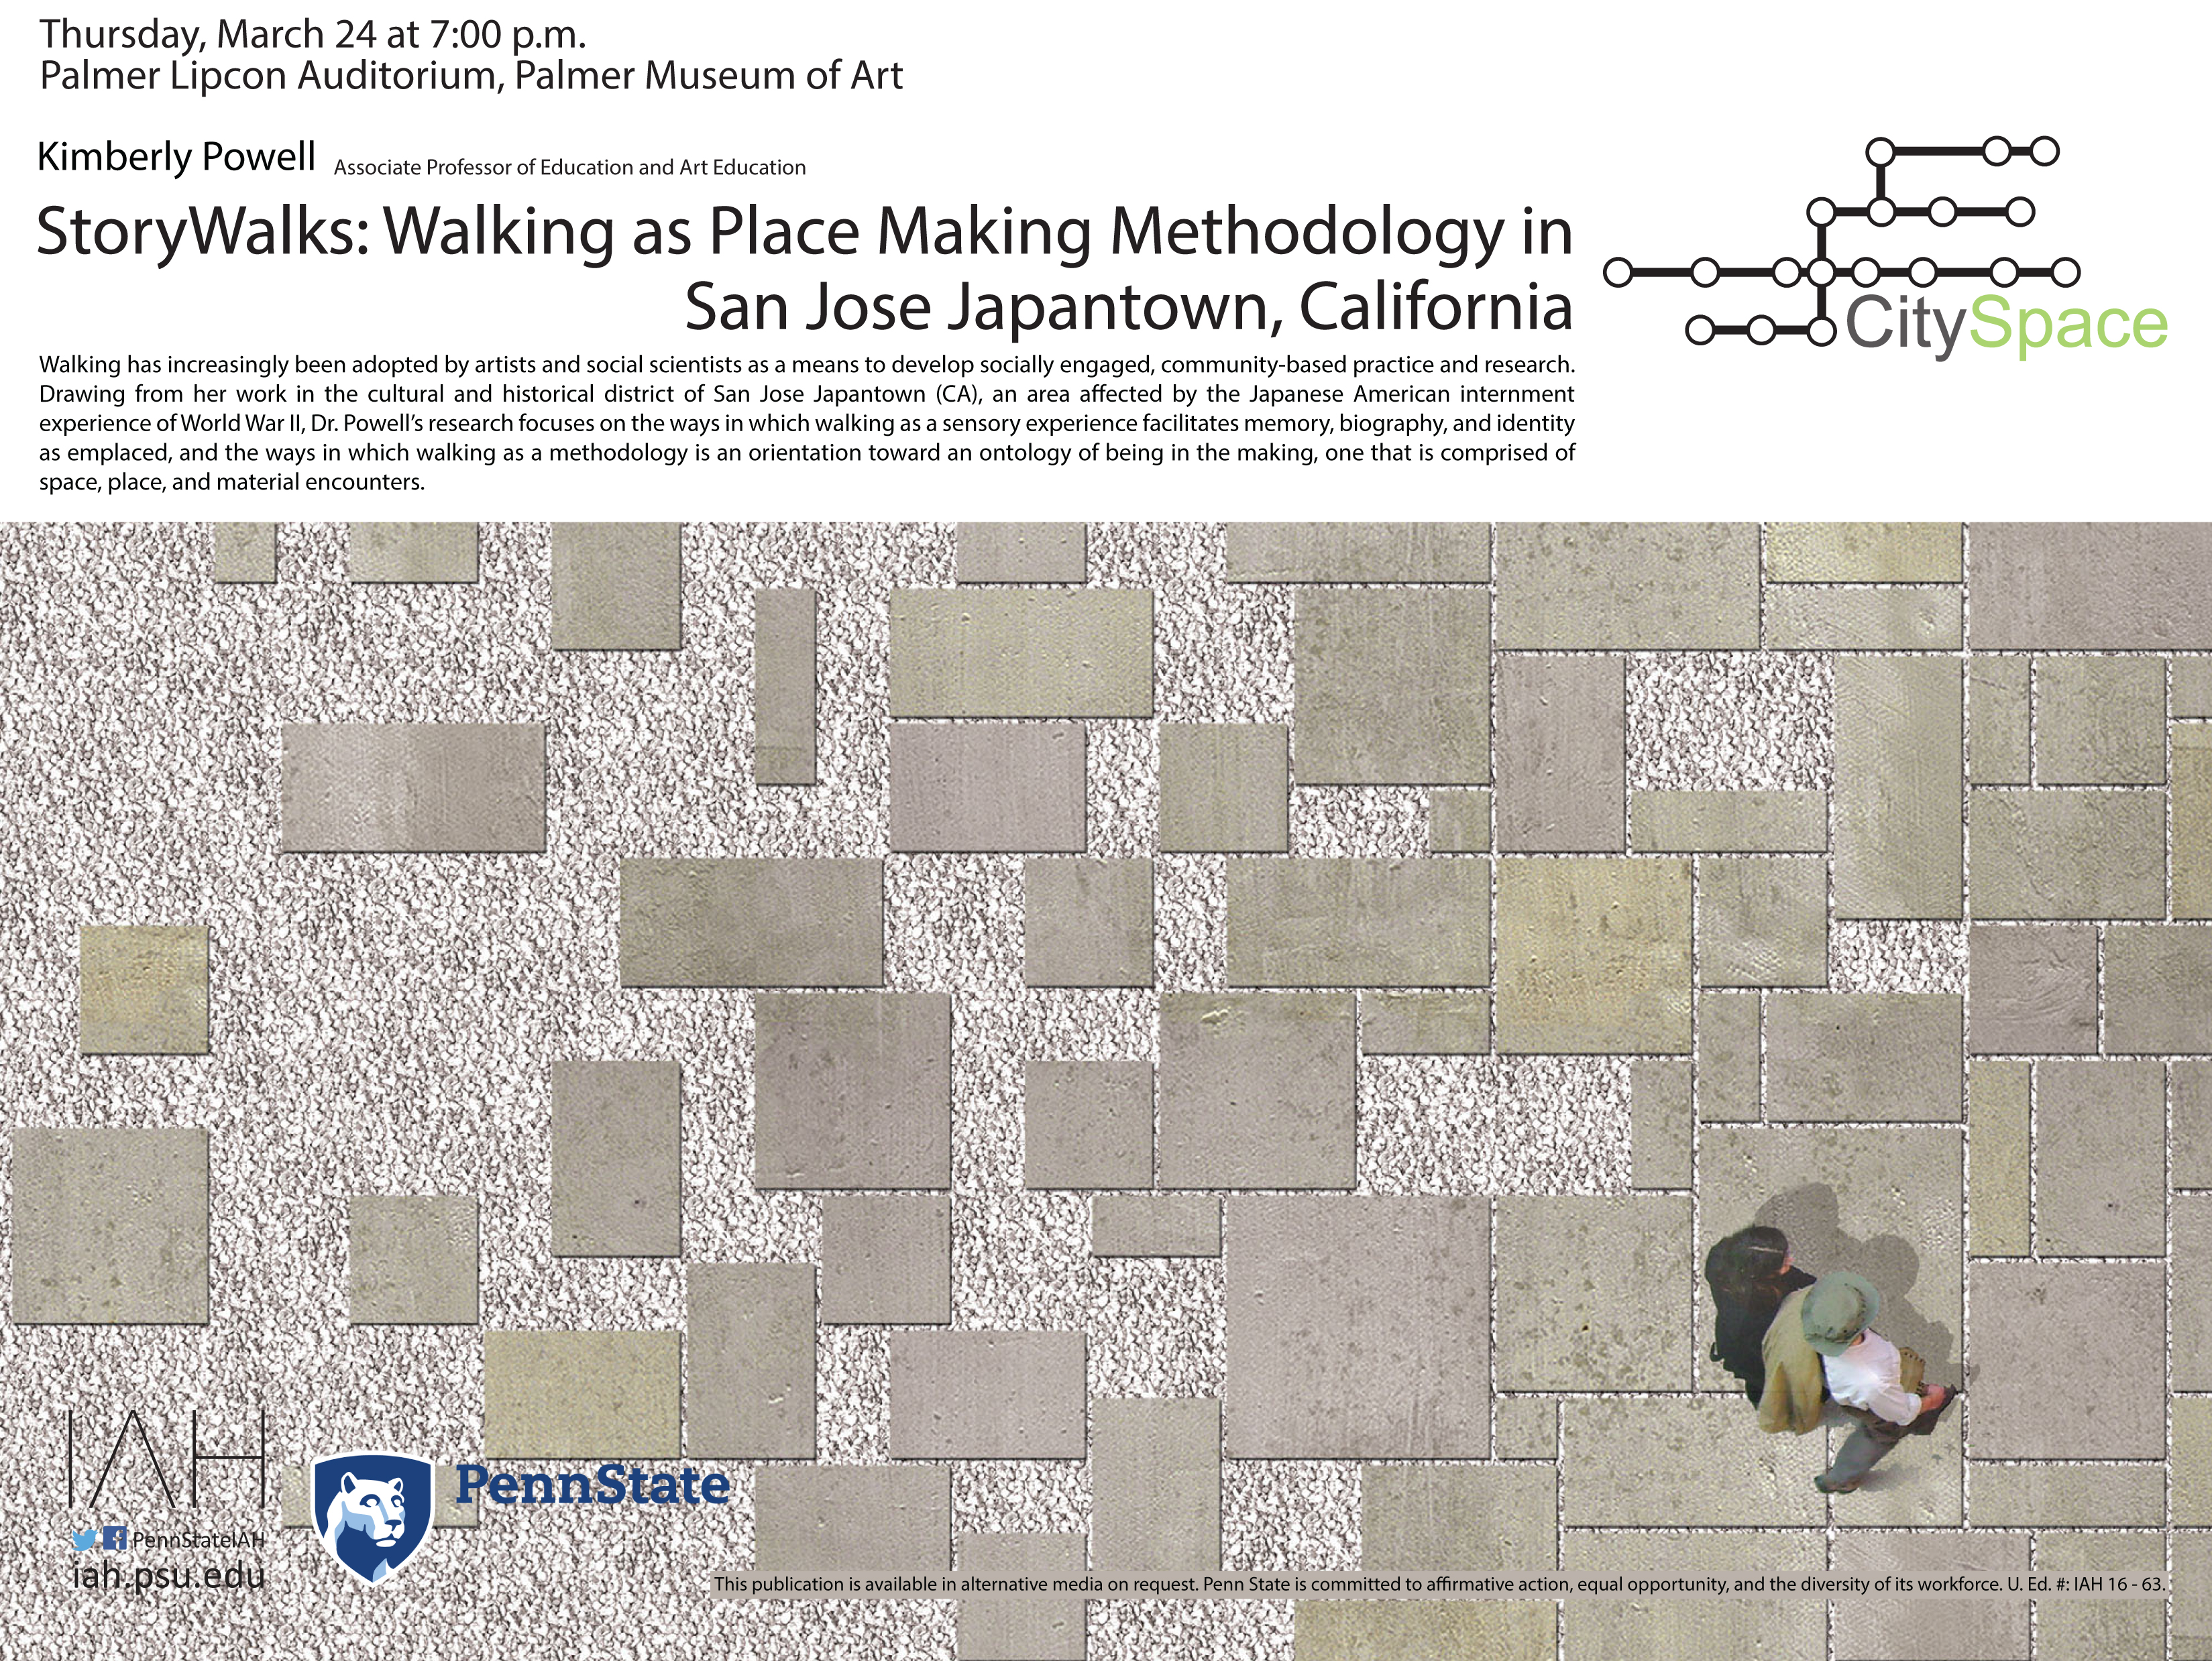 StoryWalks: Walking as Place Making Methodology in San Jose Japantown, California